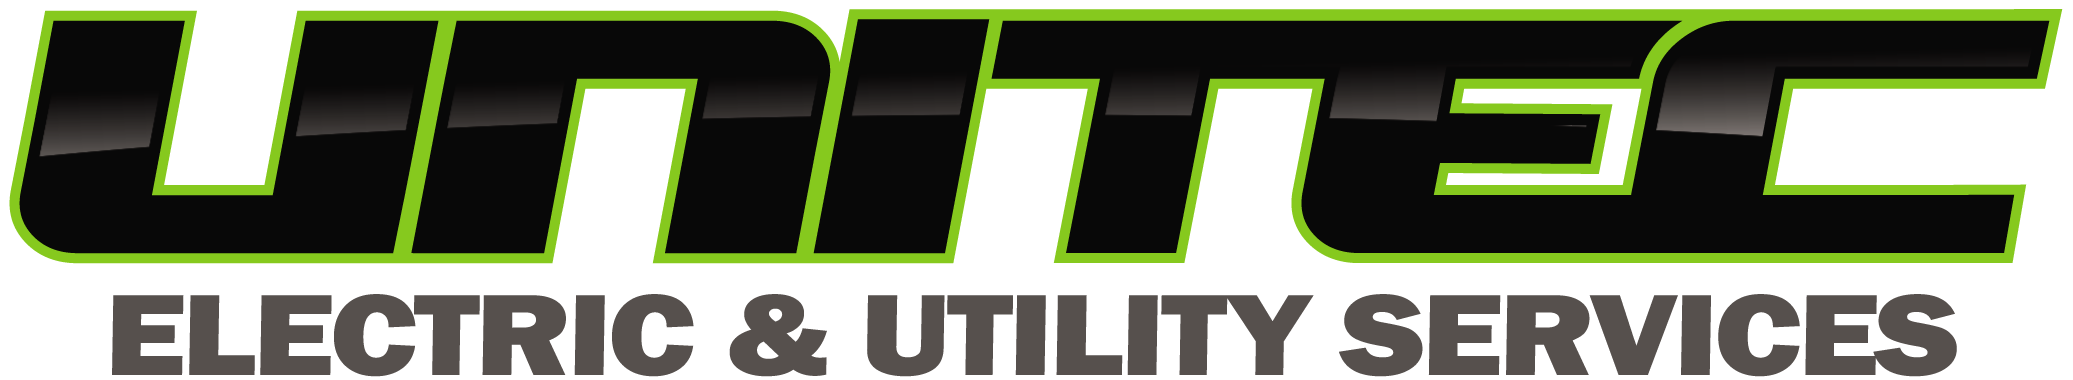 Unitec Logo